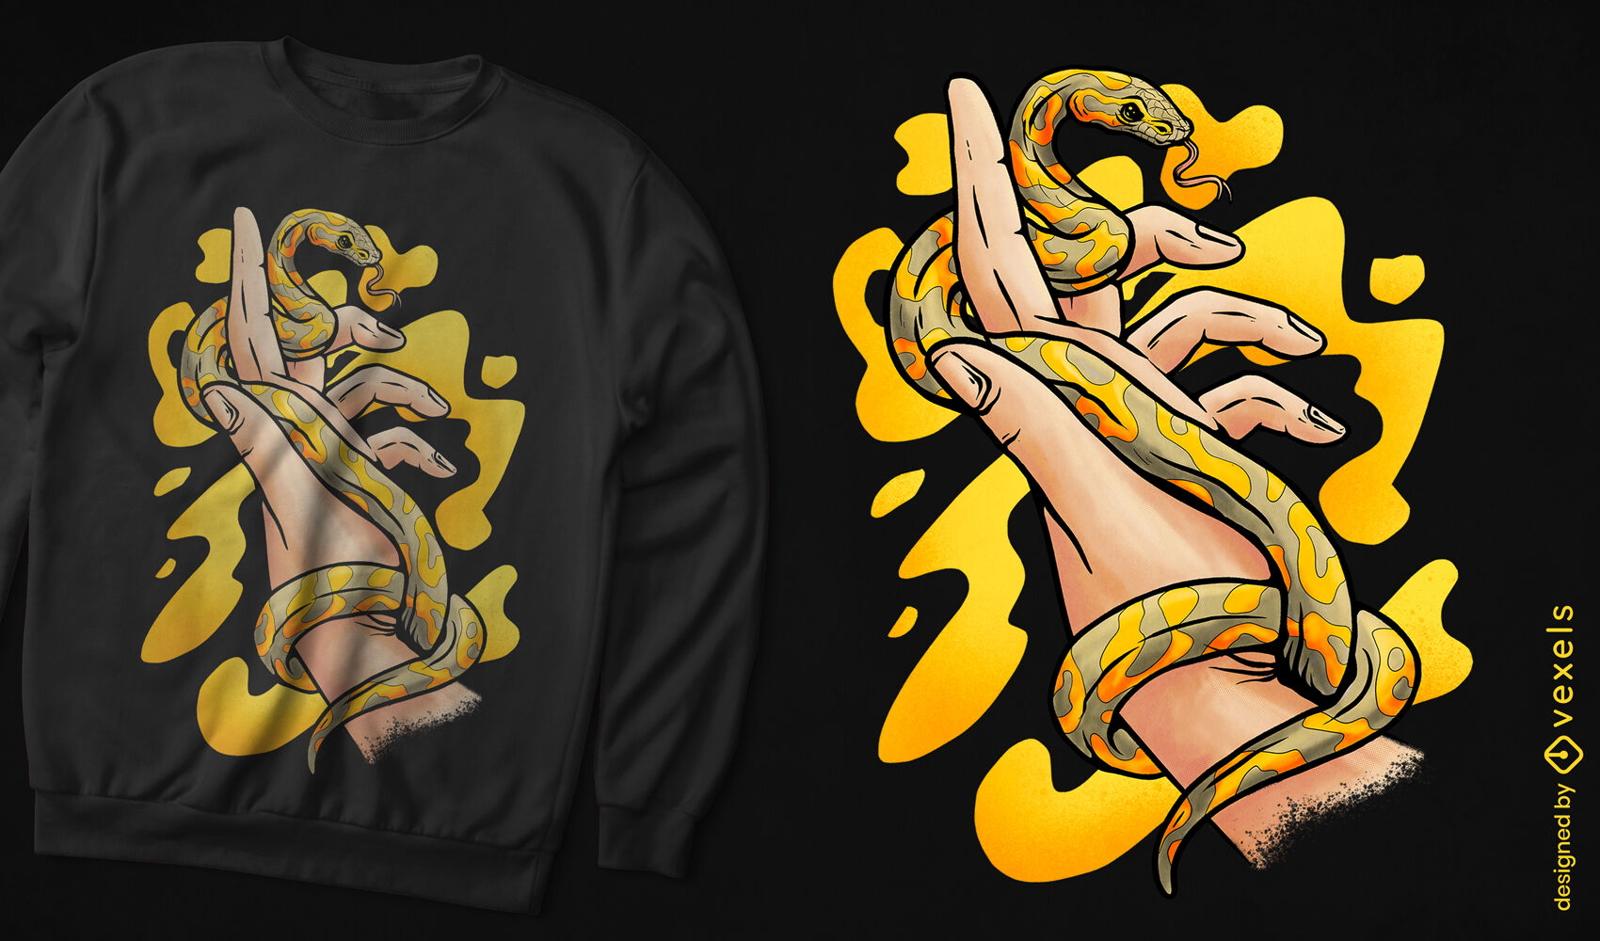 Banana ball snake t-shirt design